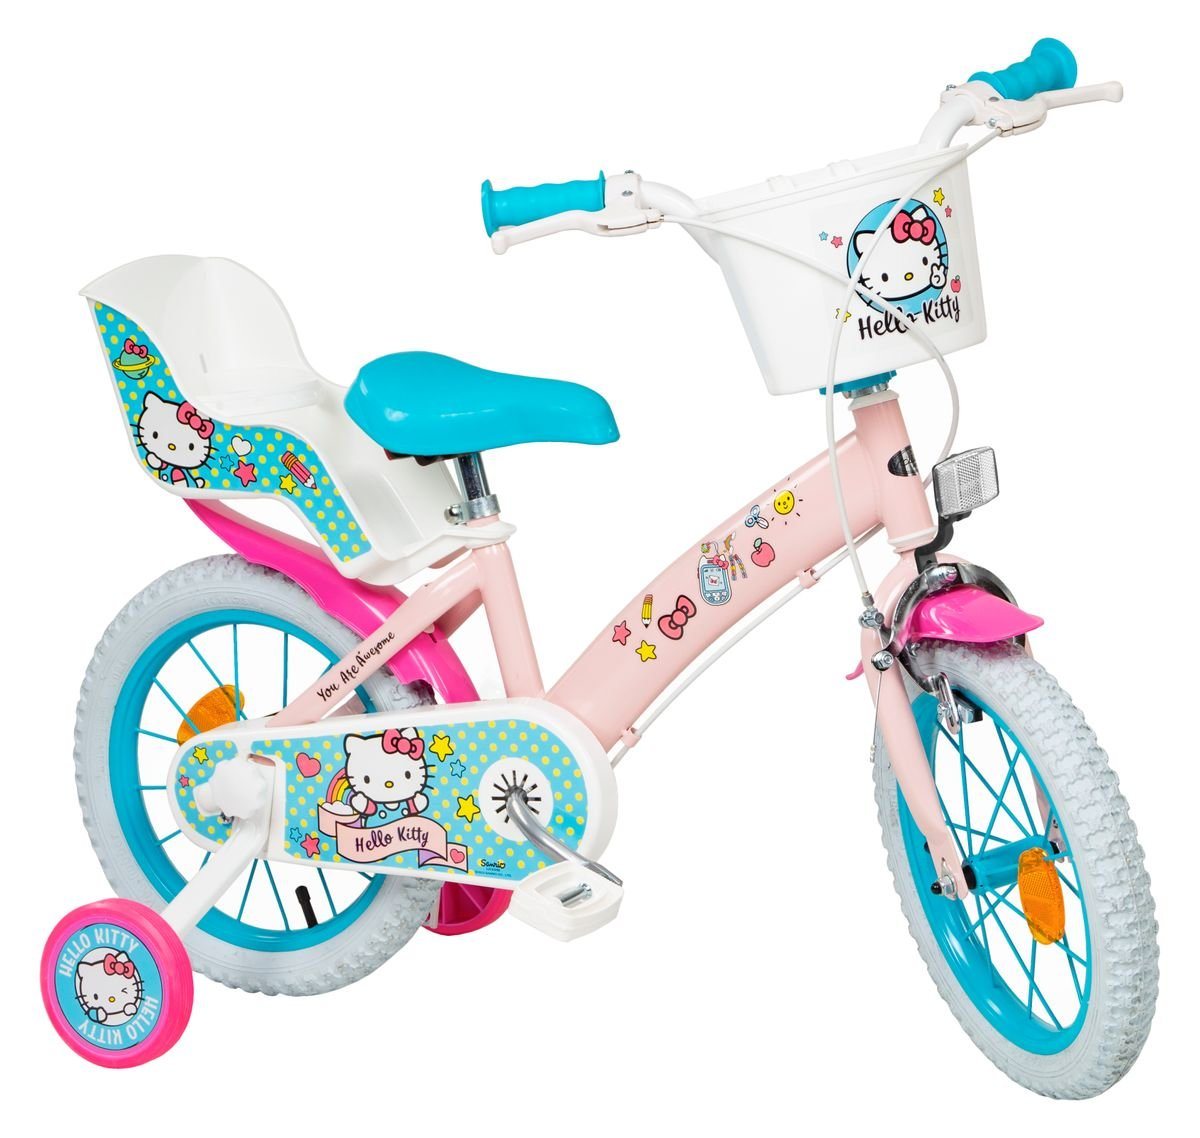 Toimsa Bikes Kinderfahrrad 16 Zoll Kinder Mädchen Fahrrad Kinderfahrrad Rad Bike Hello Kitty 1649, 1 Gang, Puppensitz, Korb, Stützräder von Toimsa Bikes